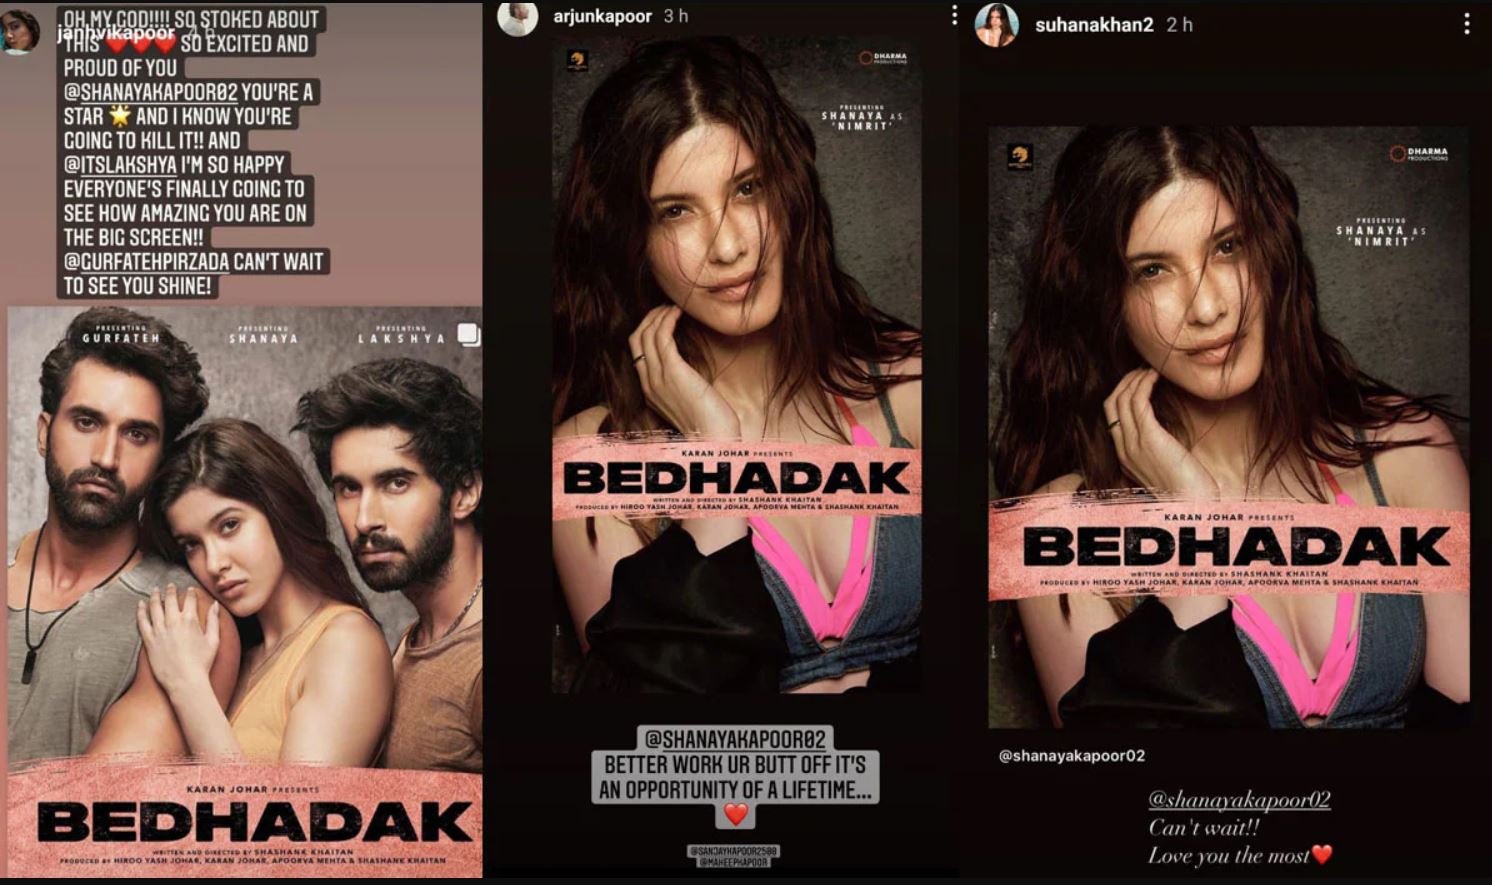 Suhana Khan, Arjun Kapoor & more Bollywood clan react to Shanya Kapoor's debut film Bedhadak  